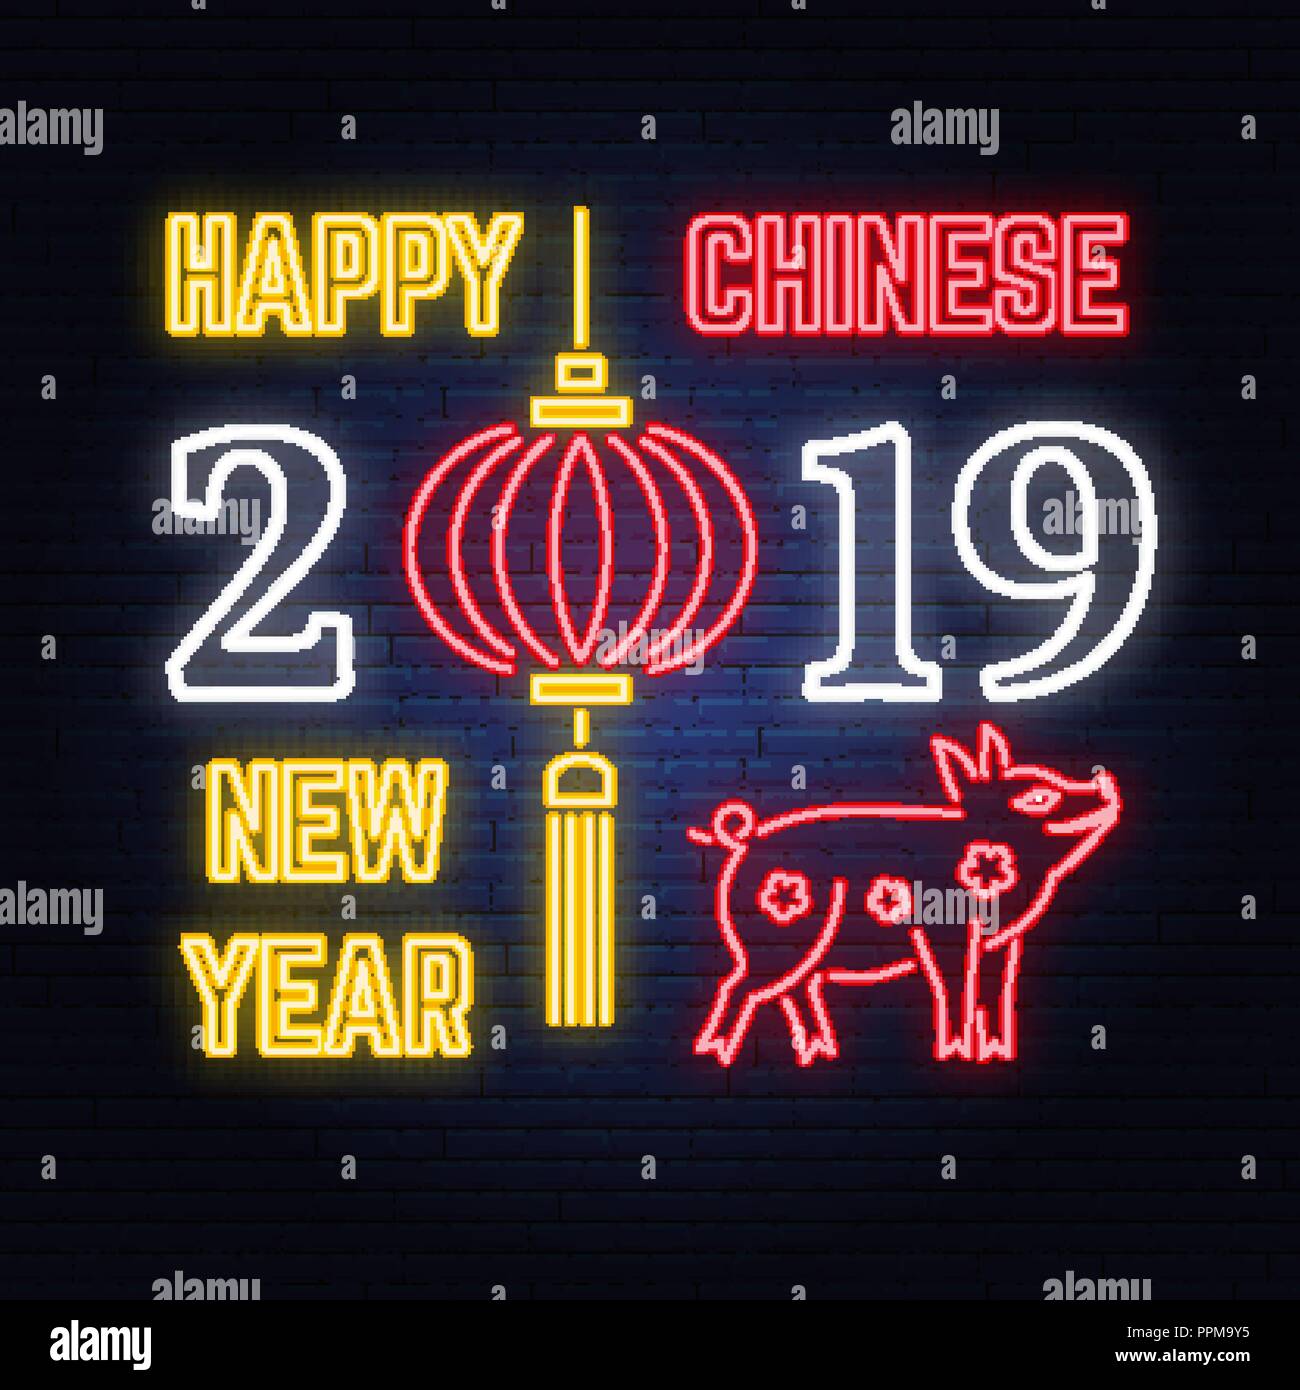 Joyeux Nouvel An chinois 2019 neon sign avec porcs et de lanternes chinoises. Vecteur. Pour carte de voeux, flyer, affiche, bannière ou un gabarit. En néon pour banner, billboard, la promotion ou la publicité. Illustration de Vecteur